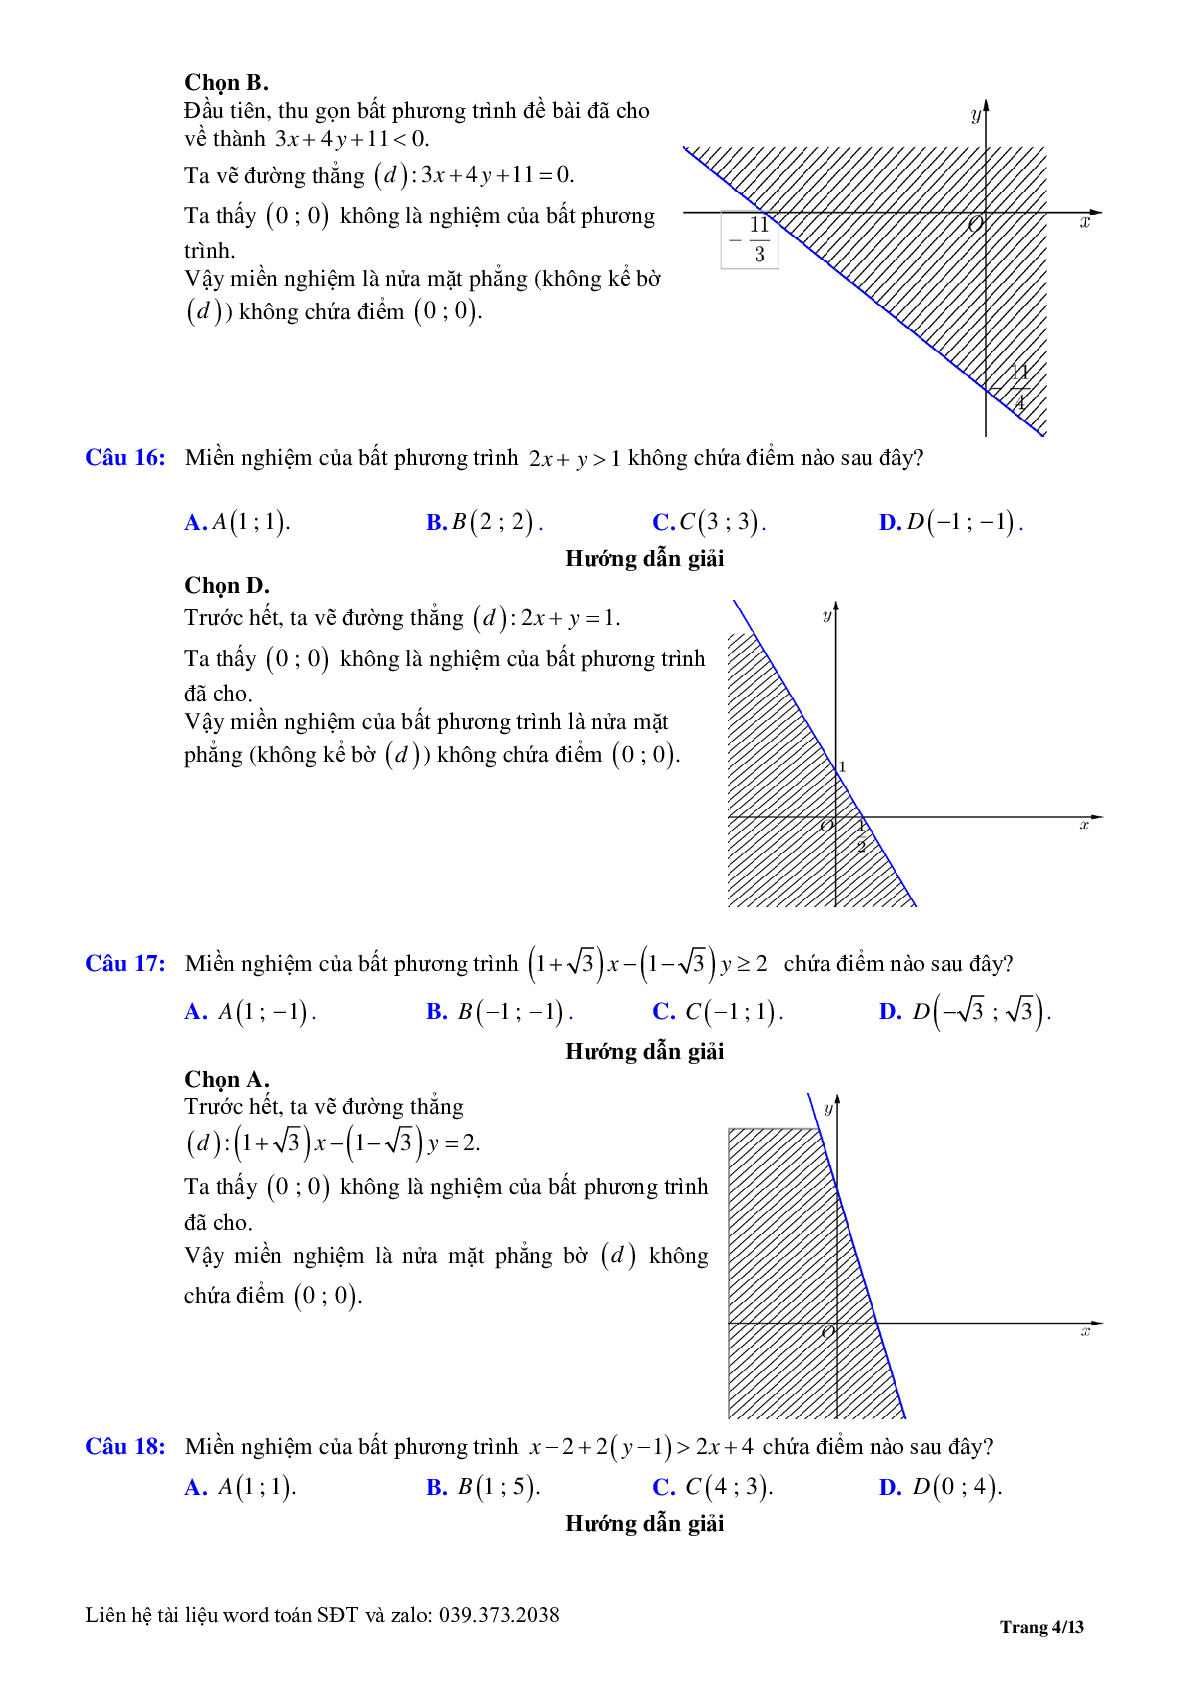 Chuyên đề bất phương trình, hệ phương trình bậc nhất hai ẩn (trang 4)